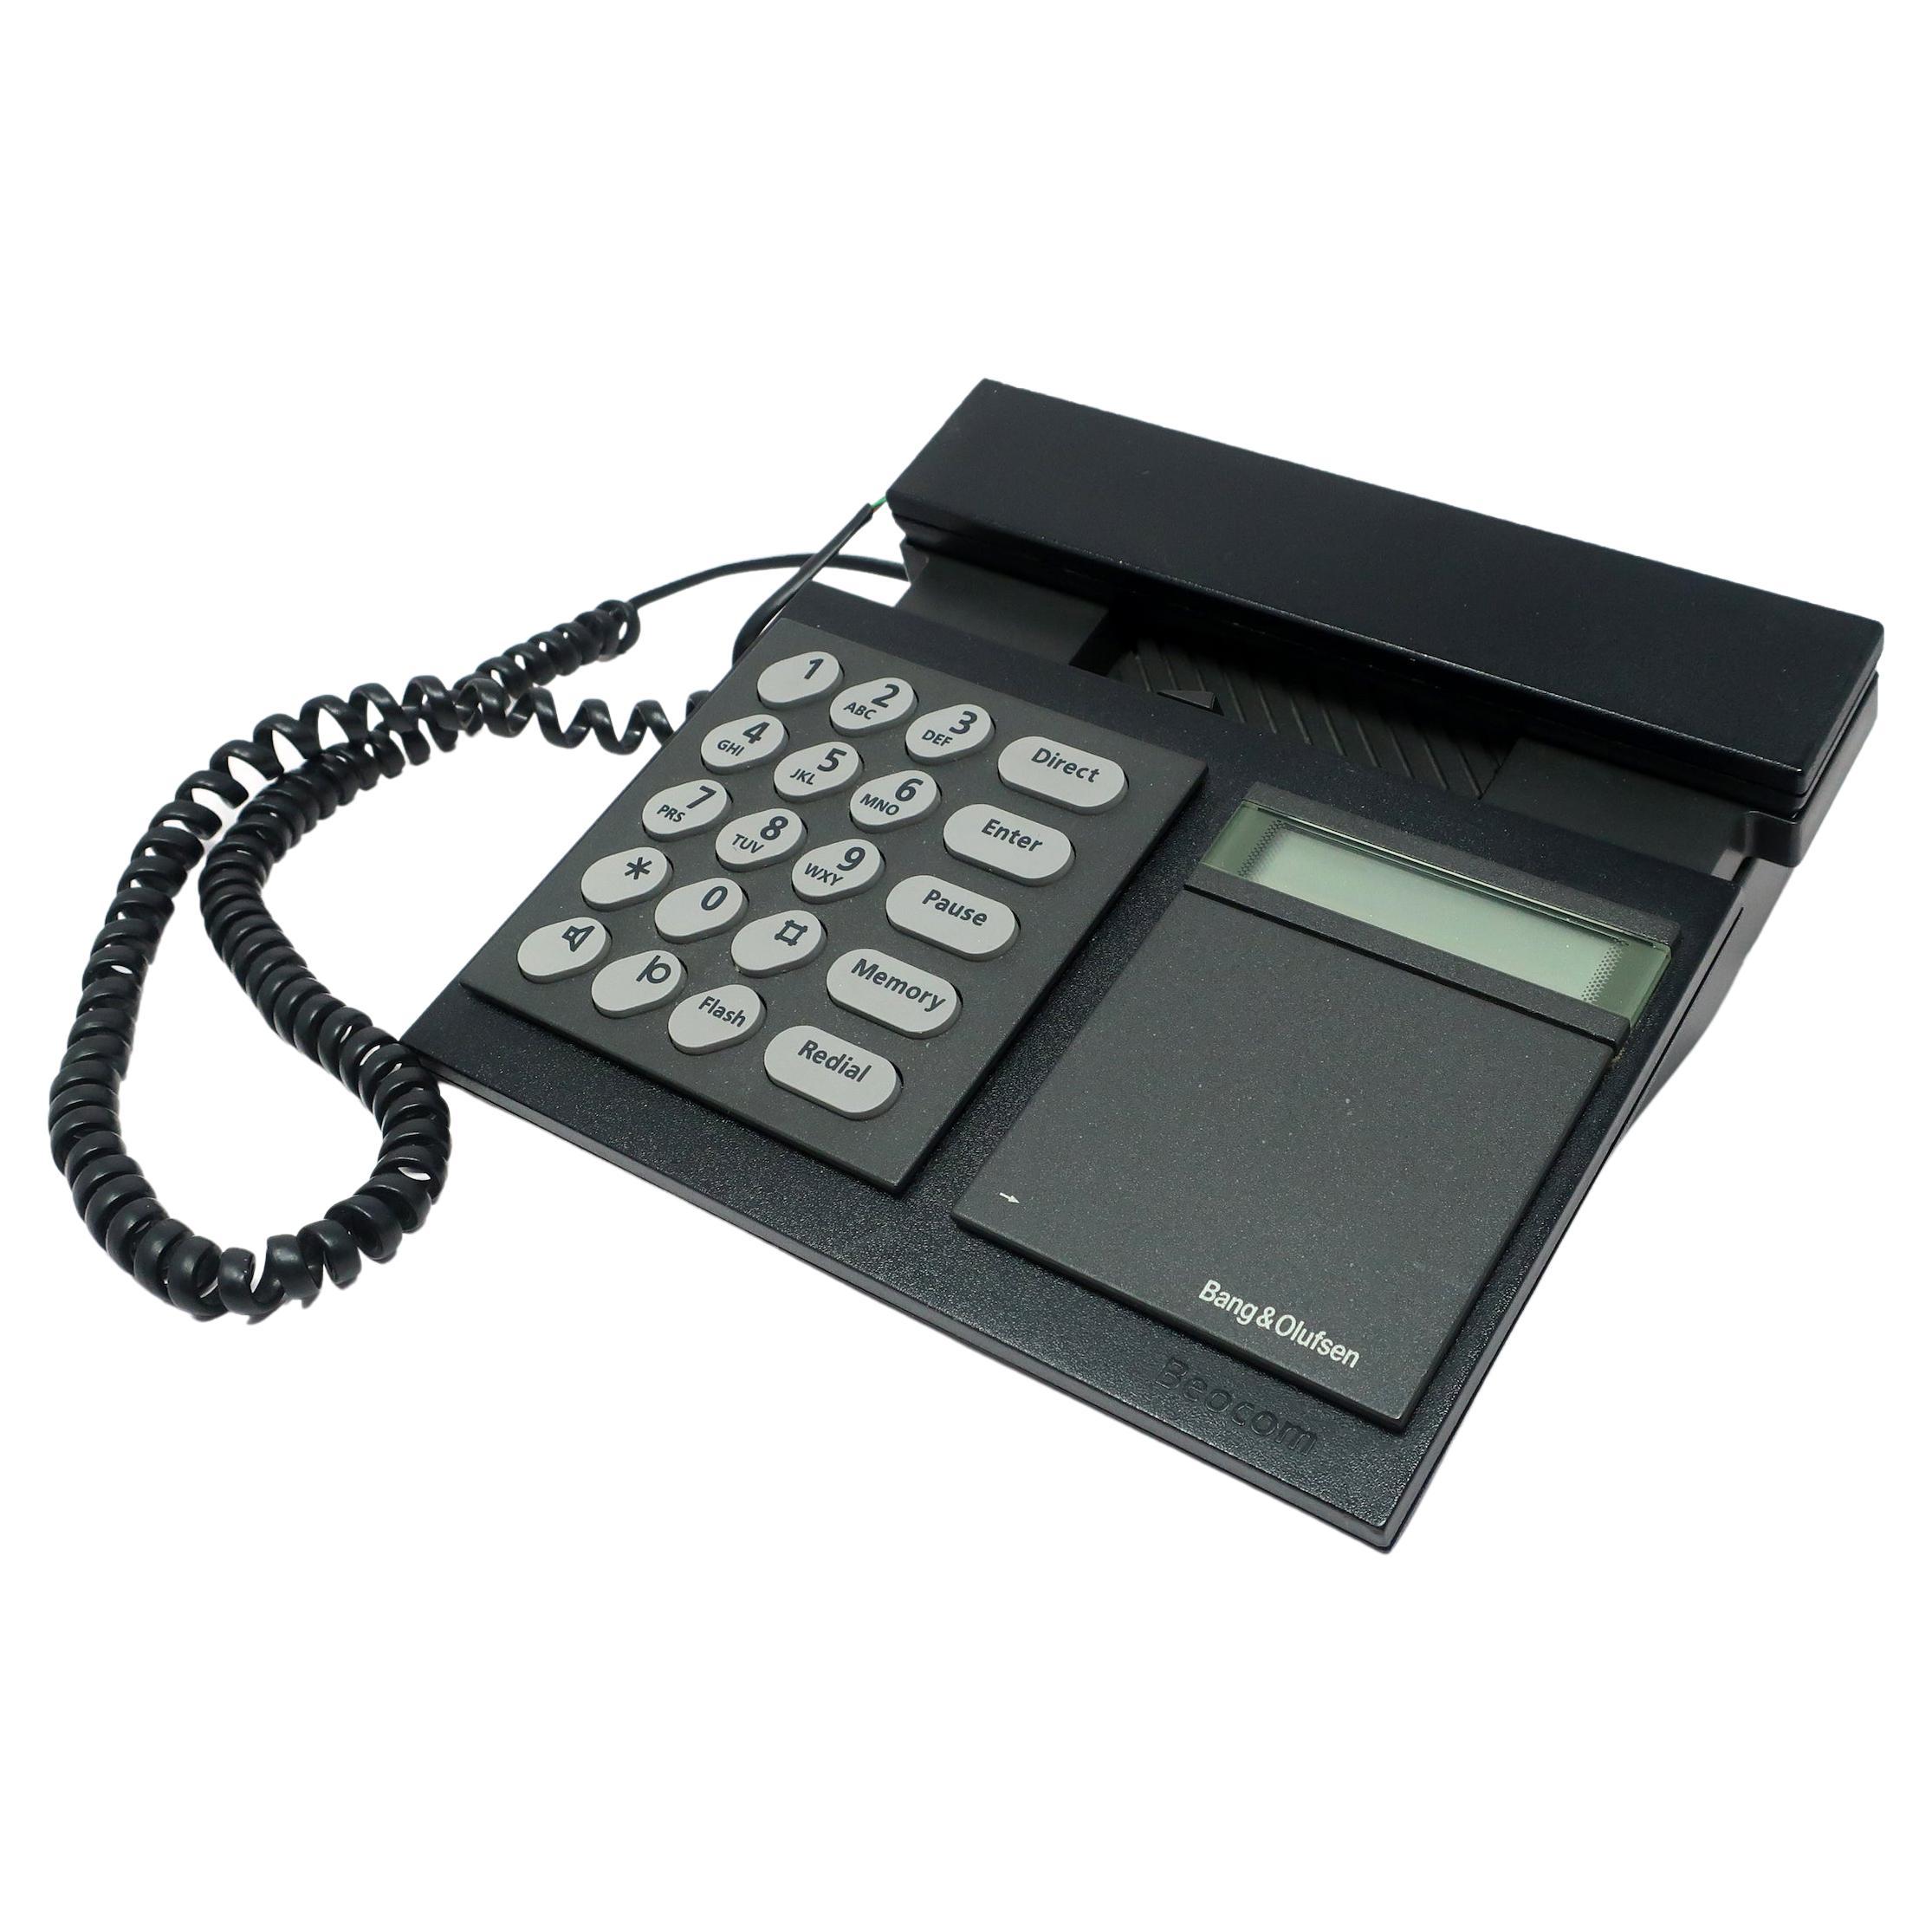 1980er Schwarzer Bang & Olufsen Beocom 2000er Telefon